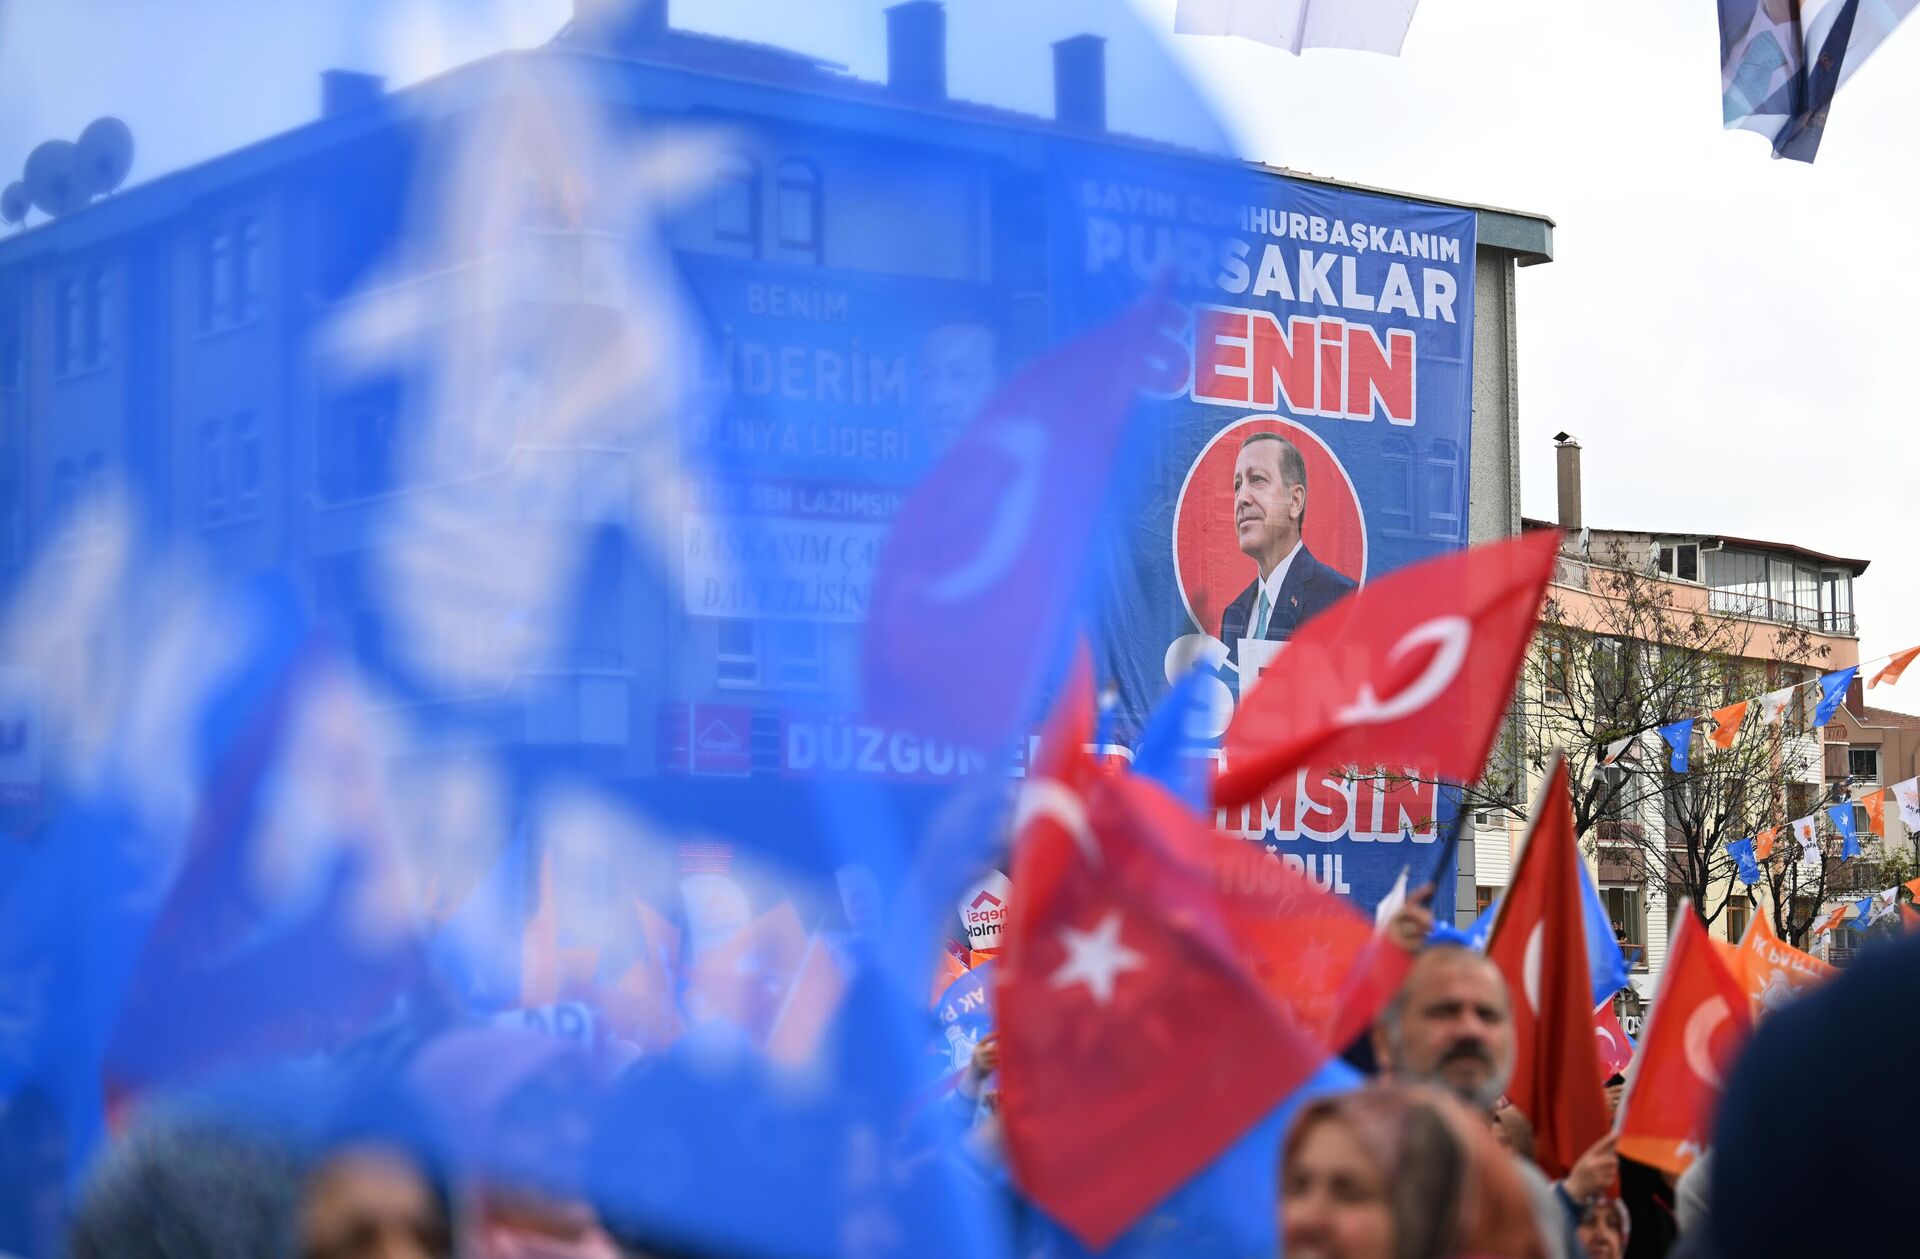 Люди на предвыборном митинге в поддержку действующего президента Турции Реджепа Тайипа Эрдогана в столичном районе Анкары - Пурсаклар - РИА Новости, 1920, 01.04.2024